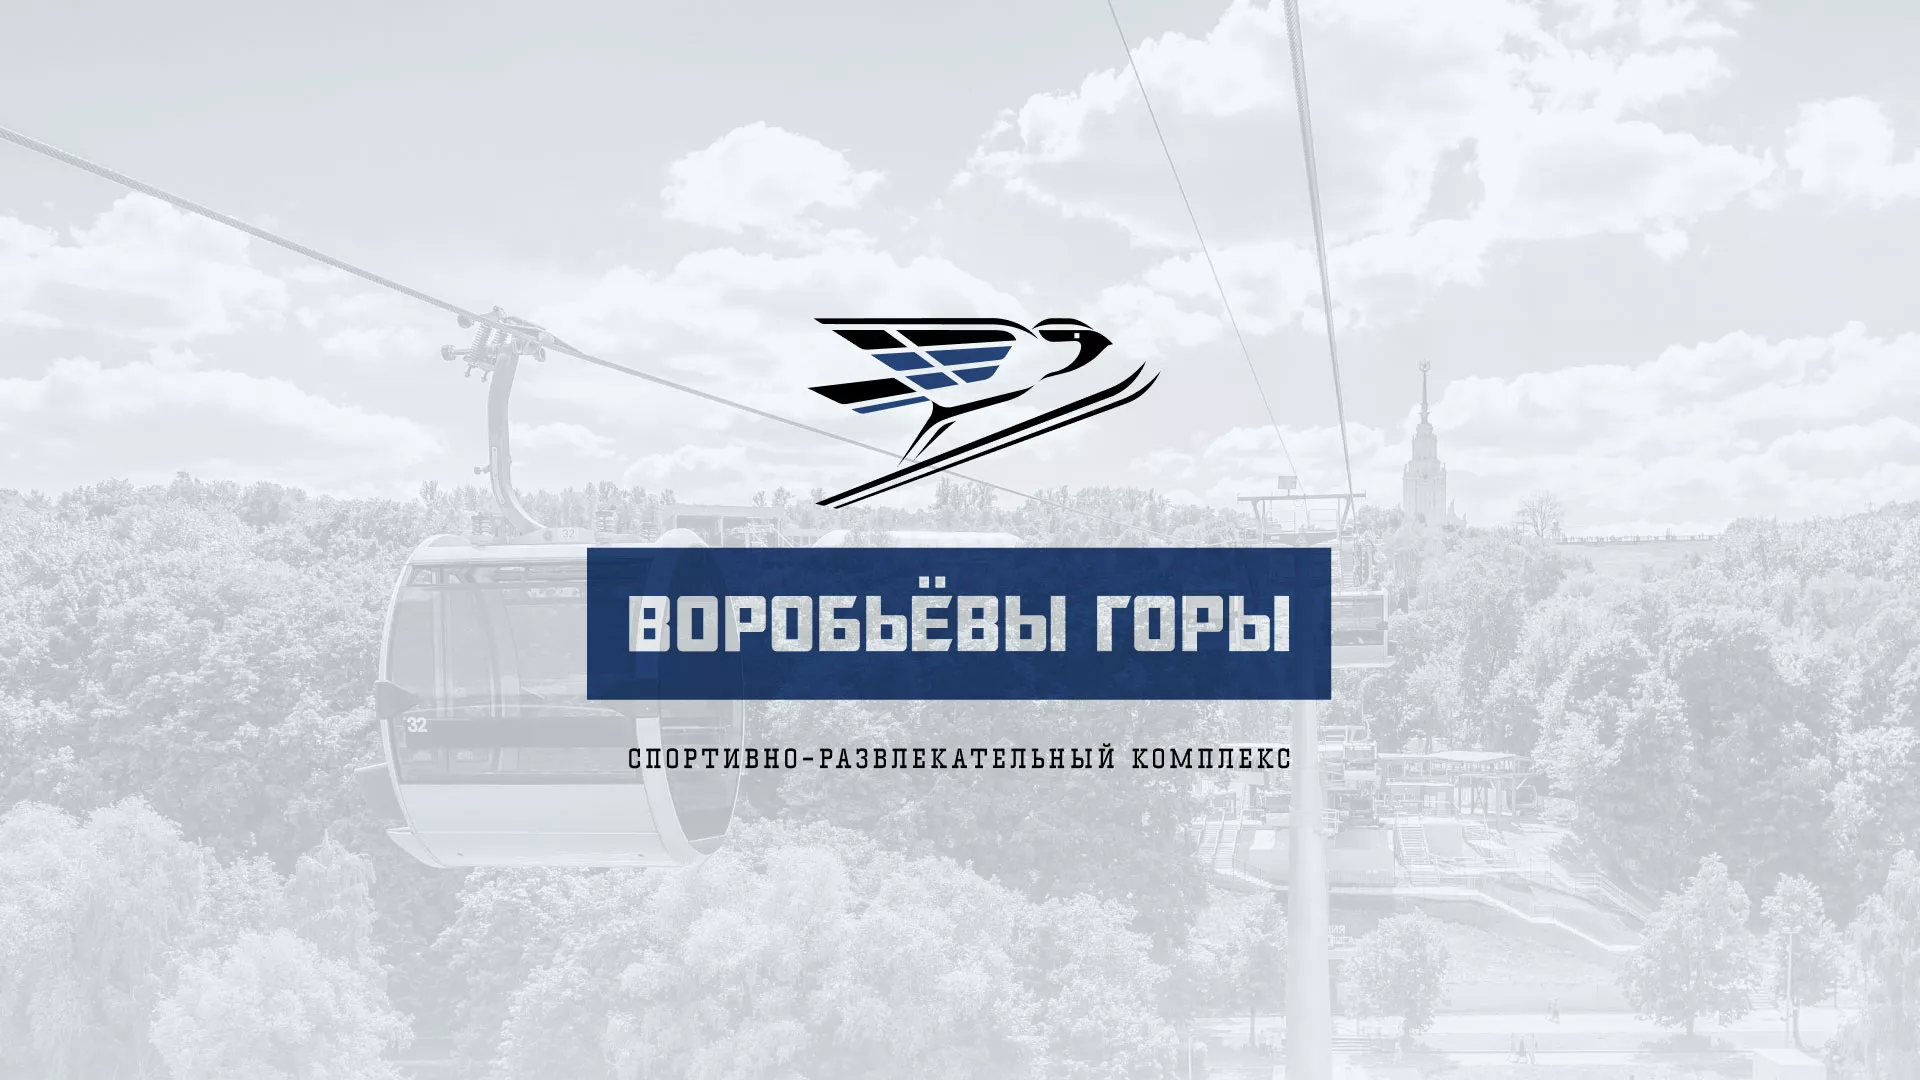 Разработка сайта в Томске для спортивно-развлекательного комплекса «Воробьёвы горы»